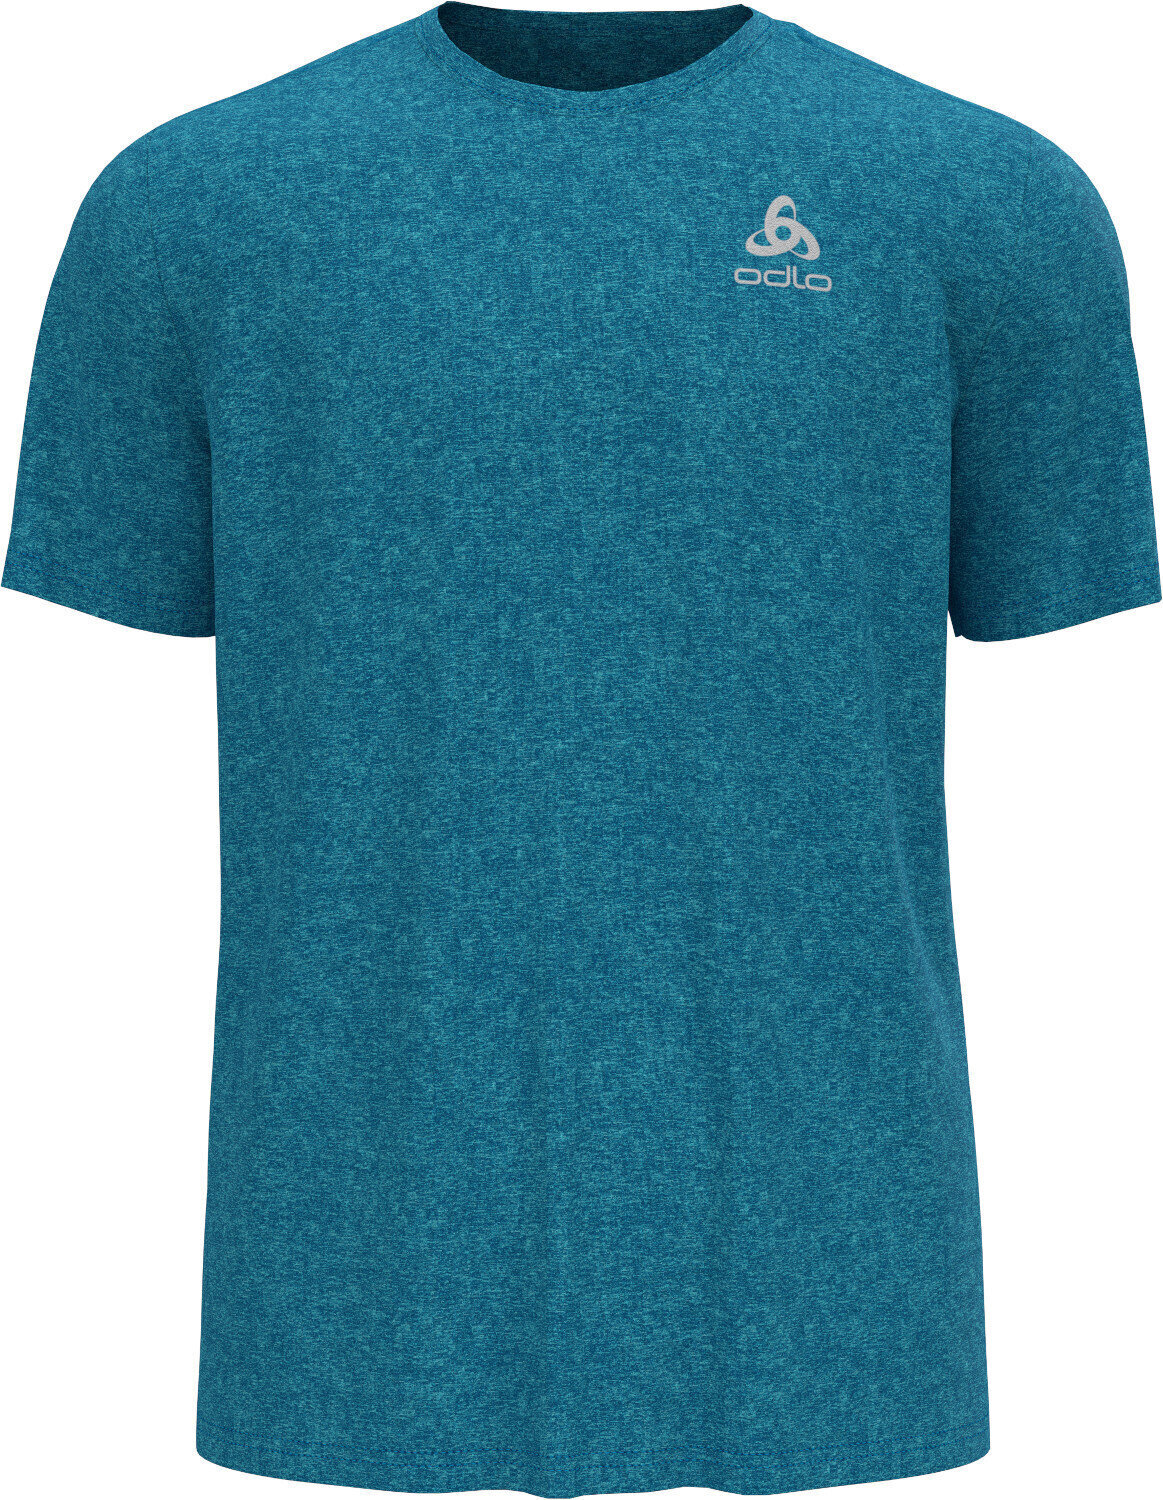 Rövidujjú futópólók Odlo Run Easy 365 T-Shirt Horizon Blue Melange S Rövidujjú futópólók